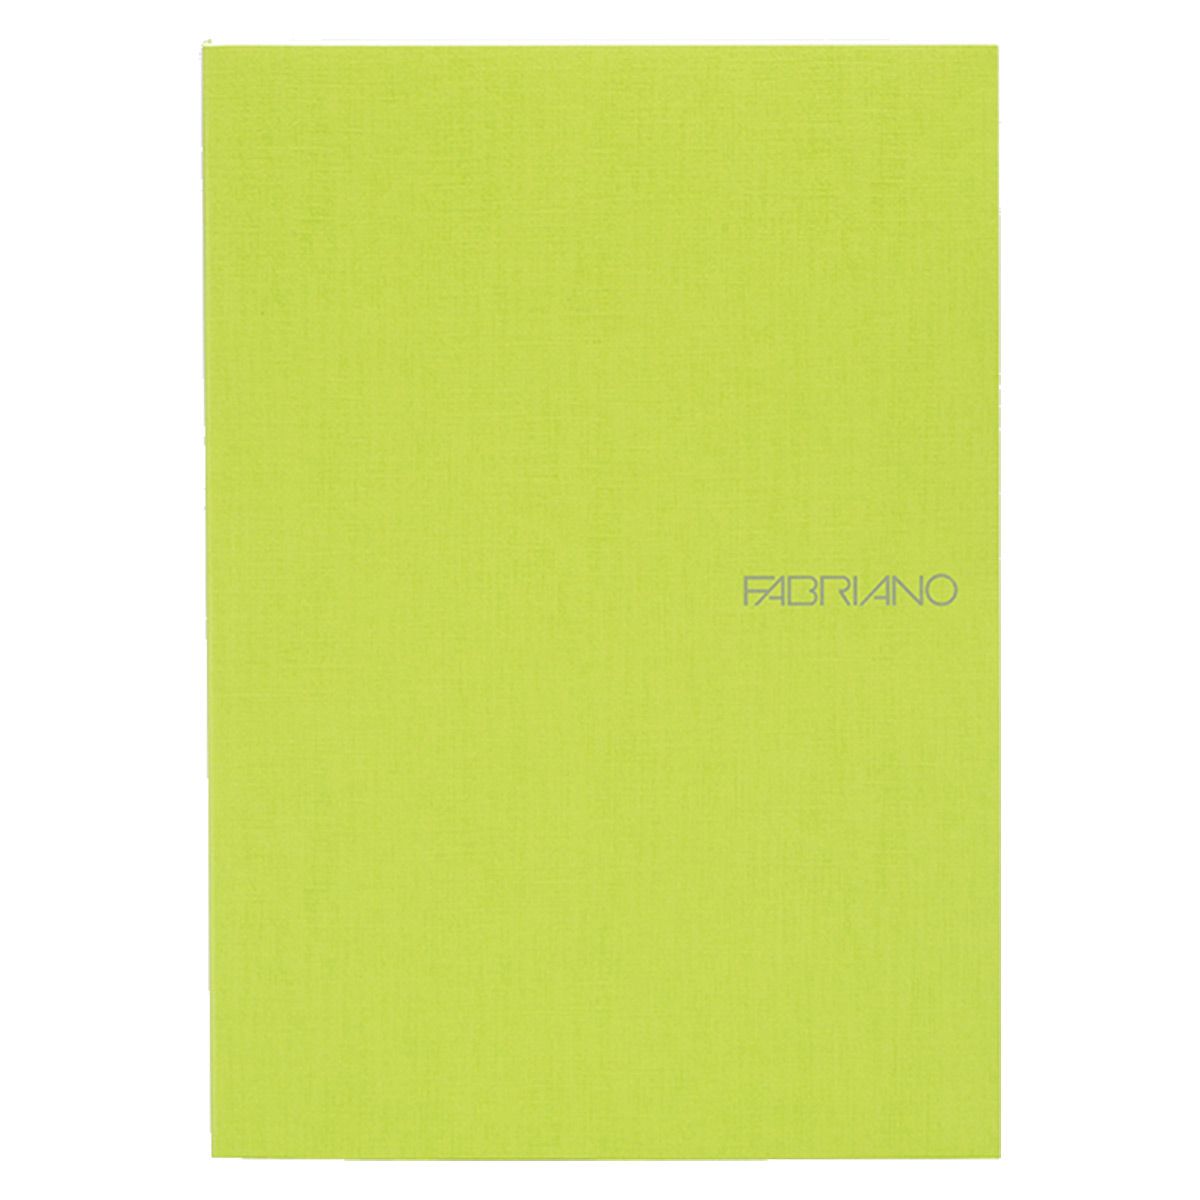 Fabriano EcoQua Notebook 5.8 x 8.3" Dot Grid Glue-Bound Lime